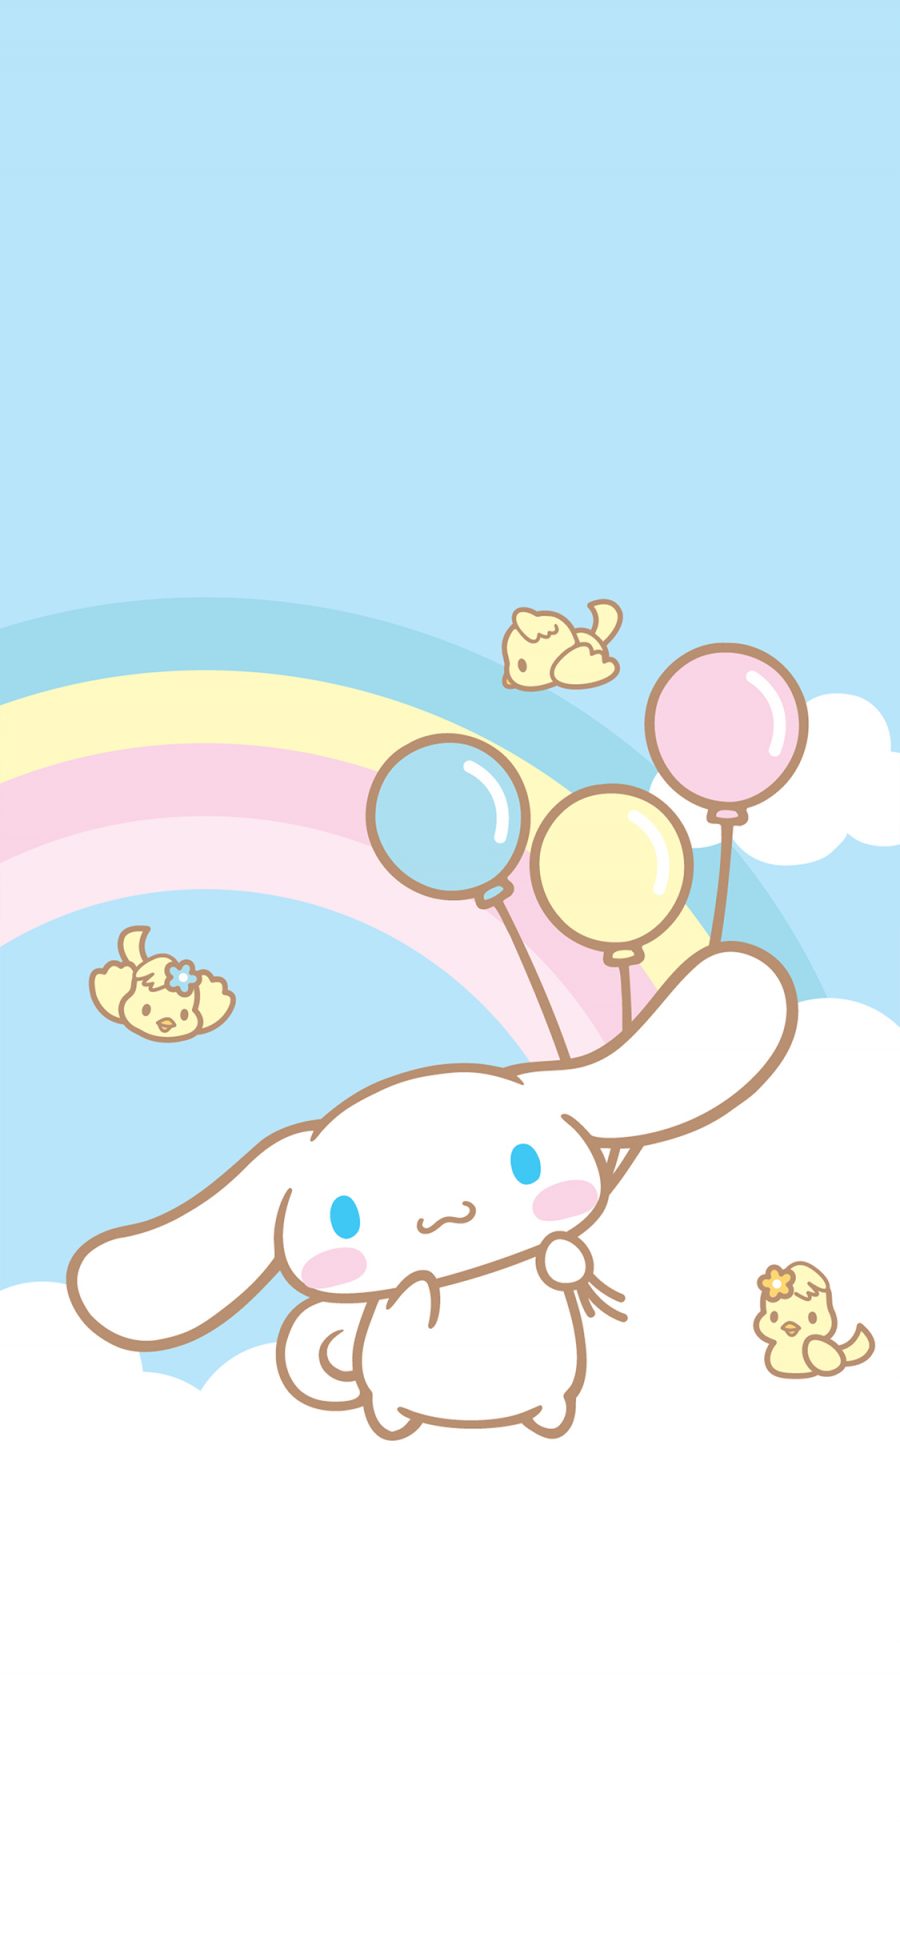 [2436×1125]玉桂狗 卡通 可爱 彩虹 鸟 气球 苹果手机动漫壁纸图片